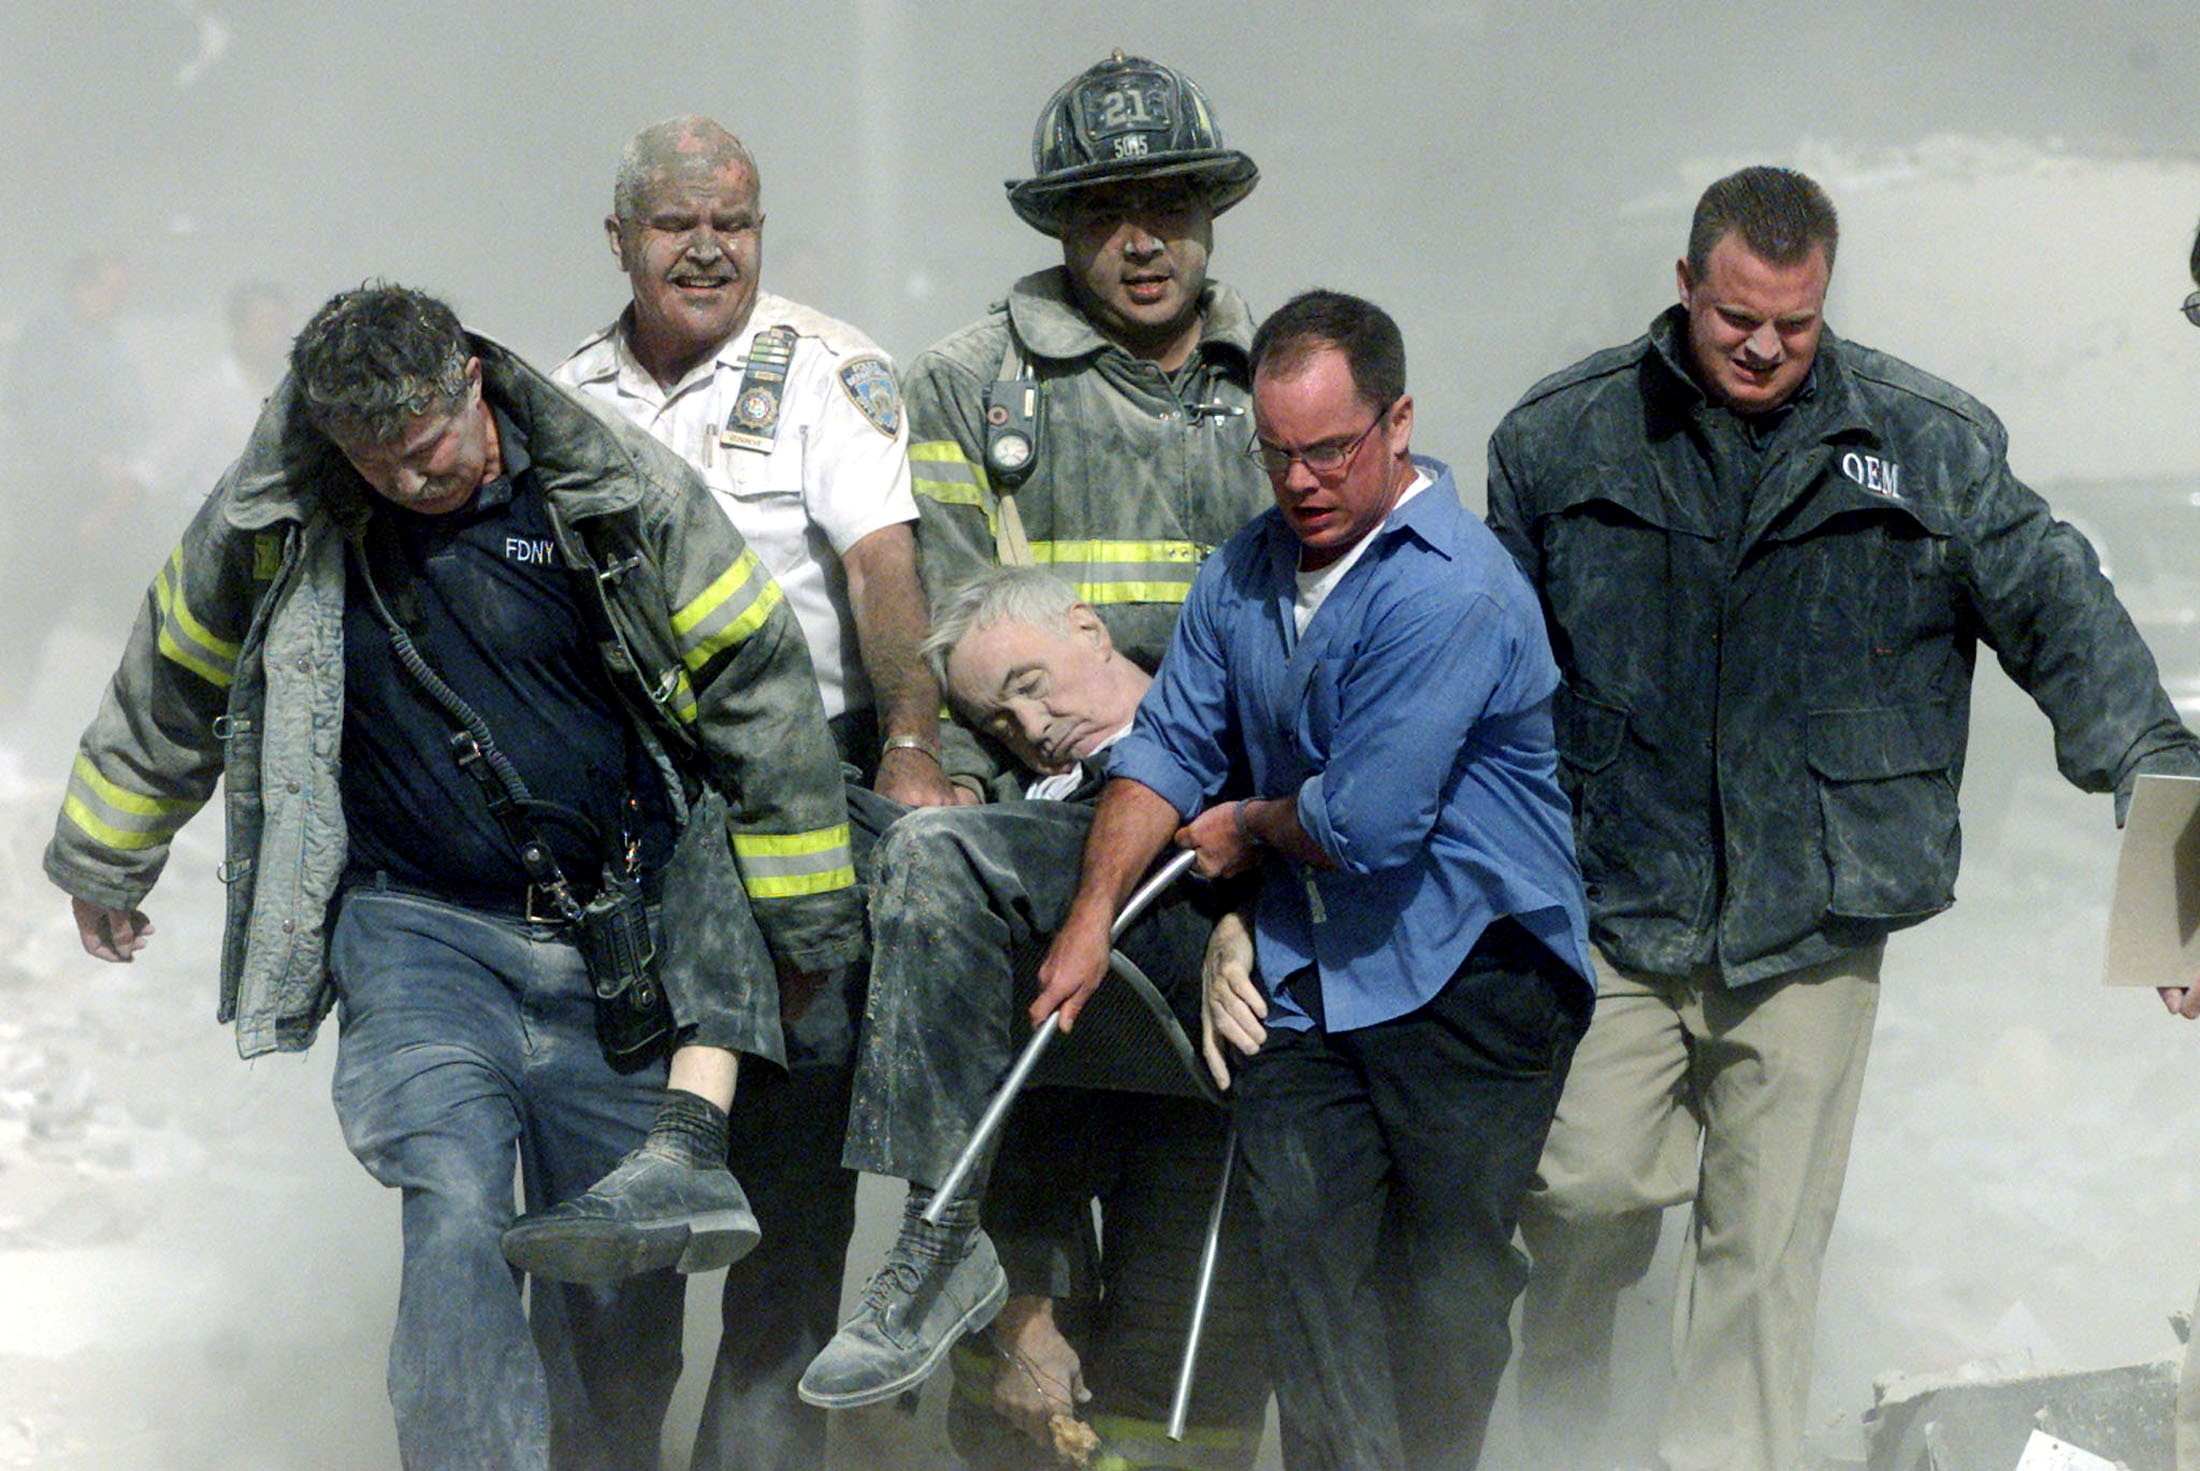 9/11 Photos: Attack on the World Trade Center